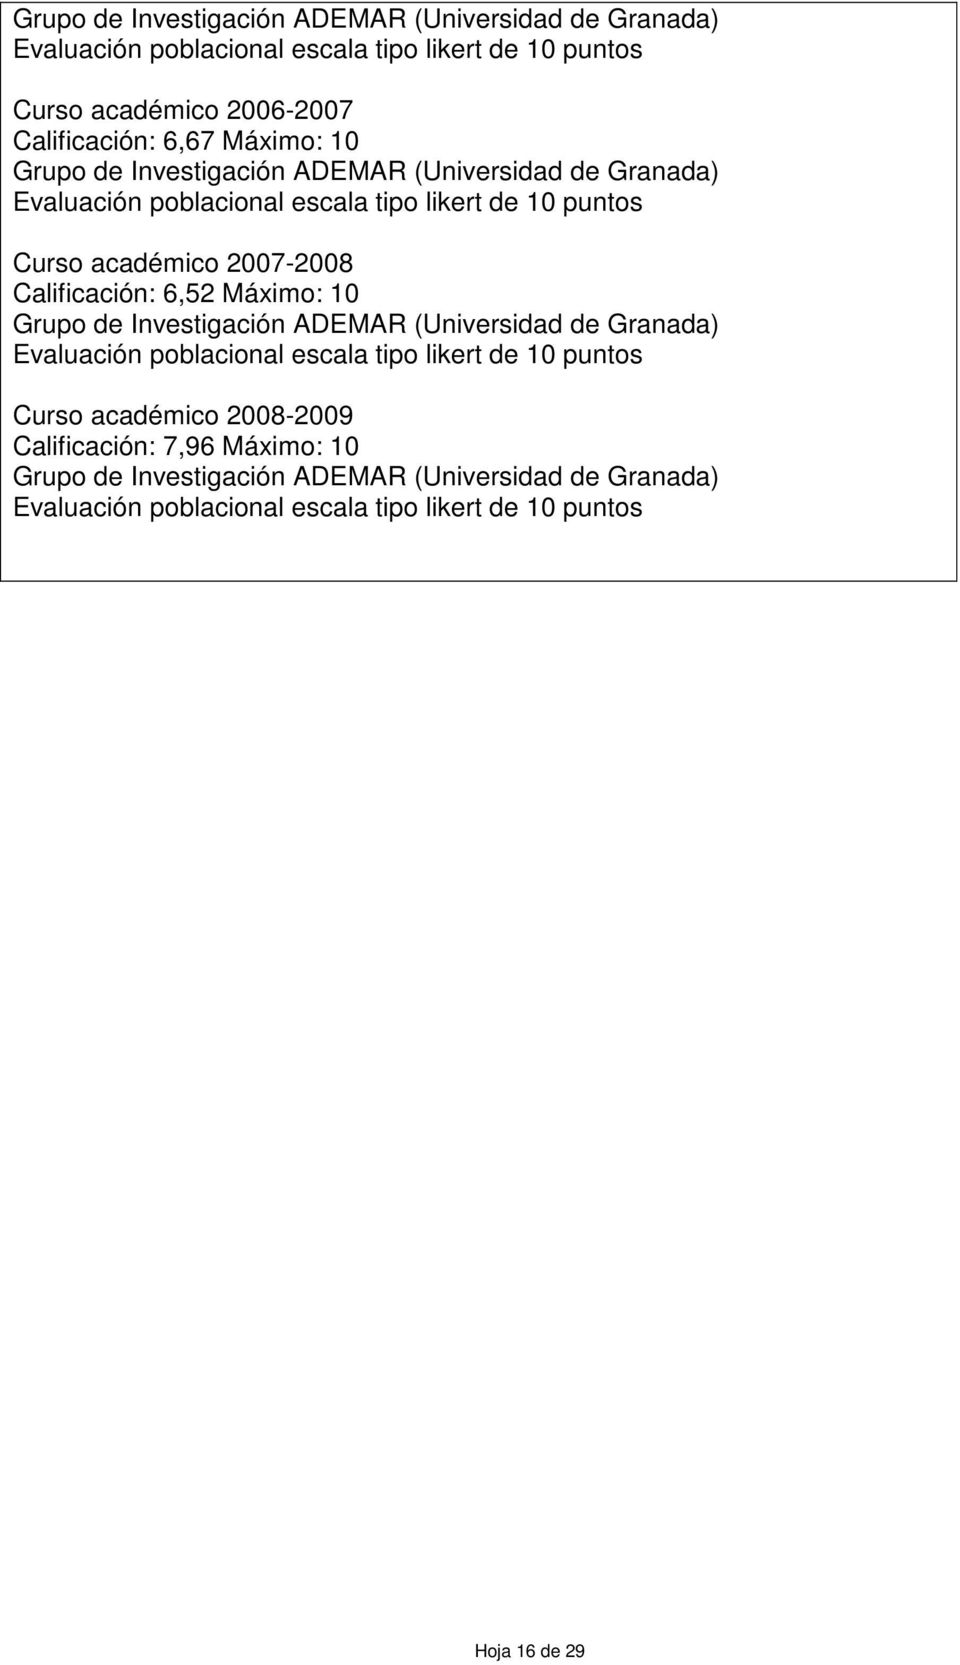 Calificación: 6,52 Máximo: 10 Grupo de Investigación ADEMAR (Universidad de Granada) Evaluación poblacional escala tipo likert de 10 puntos Curso académico